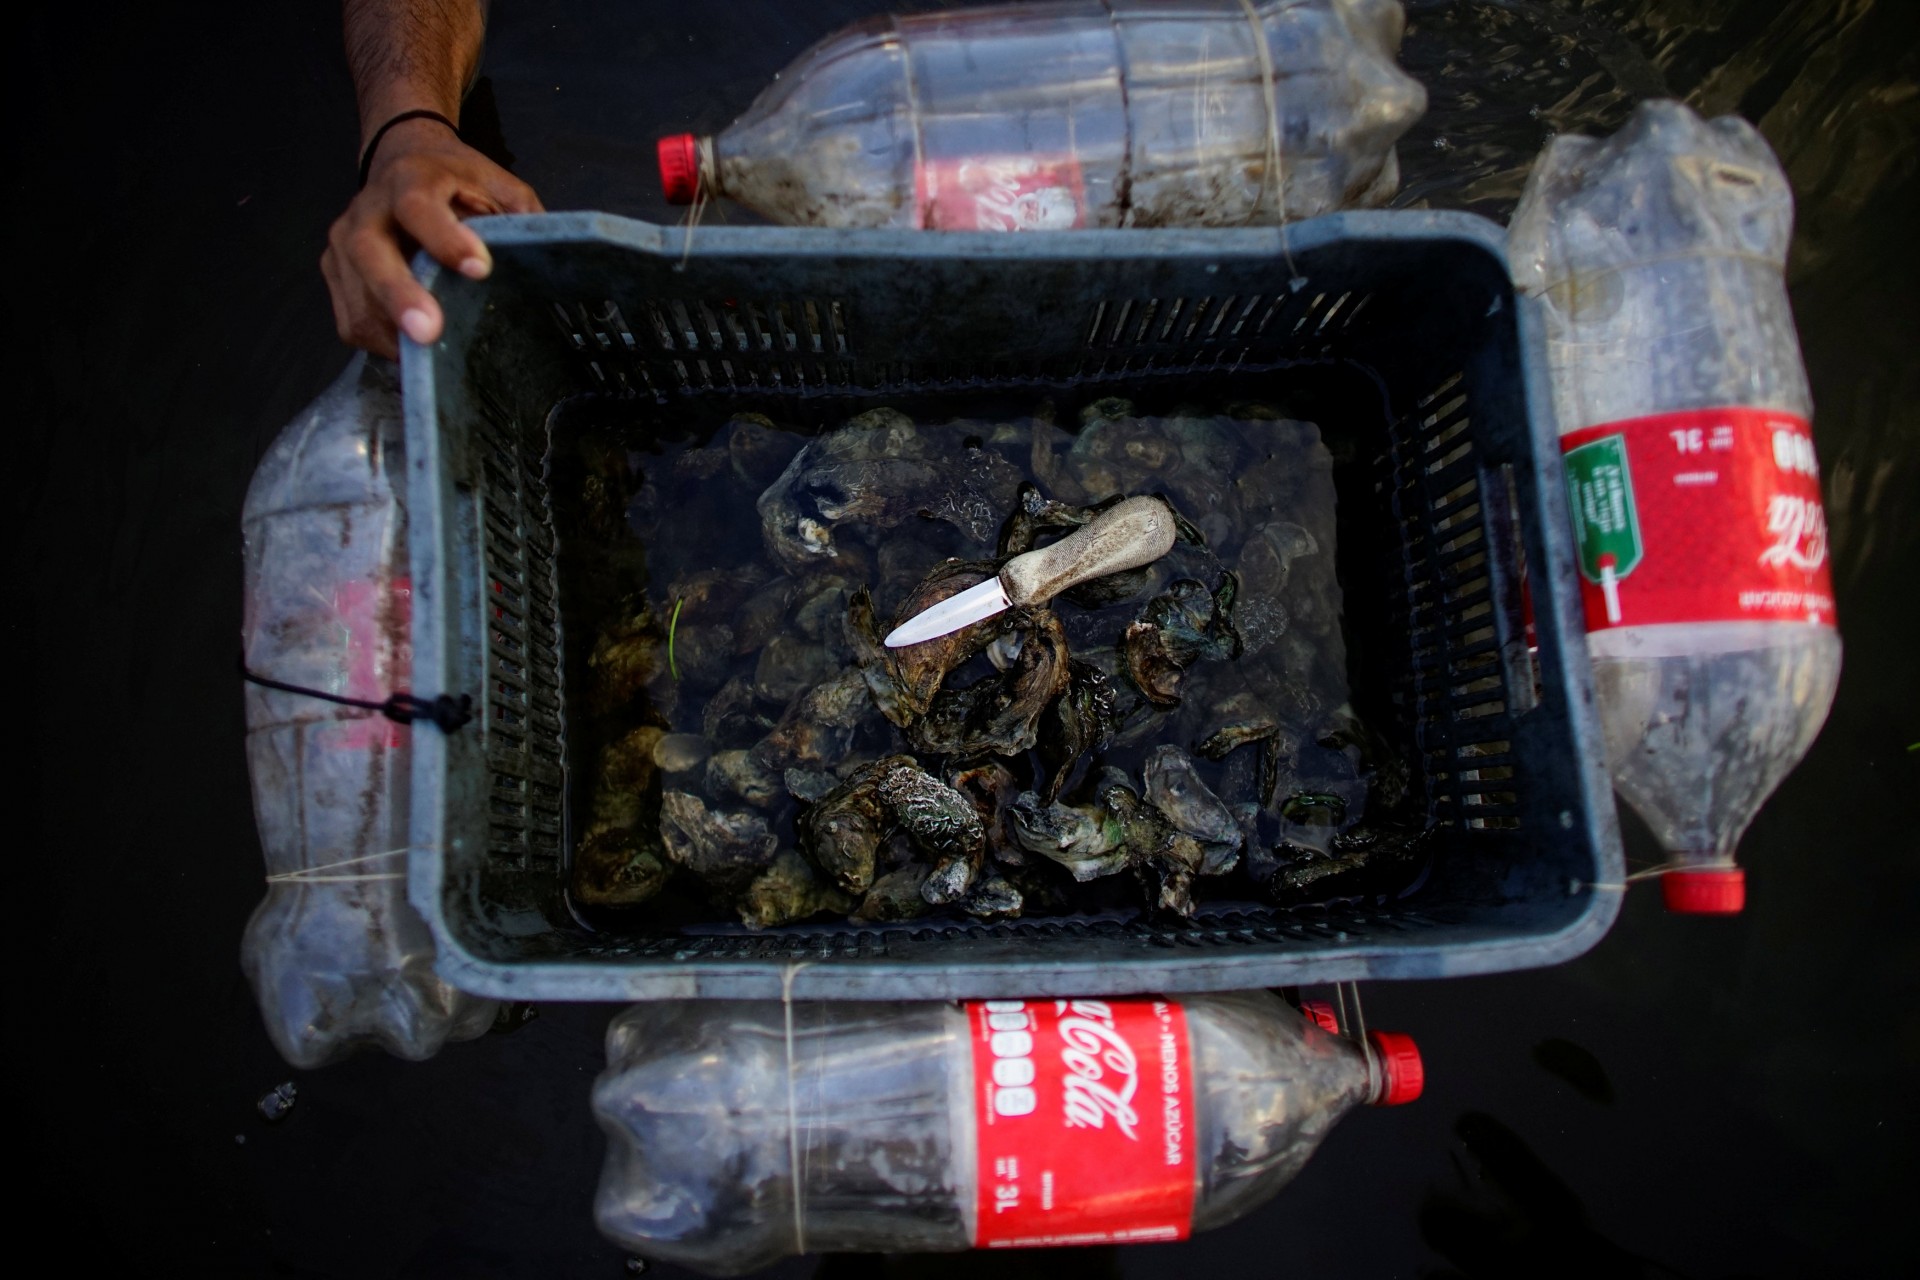 El pescador Carlos Reyes muestra una caja flotante improvisada utilizada para almacenar ostras mientras trabaja en un área de manglares en la laguna Mecoacan cerca de Paraiso, México, el 9 de diciembre de 2018.